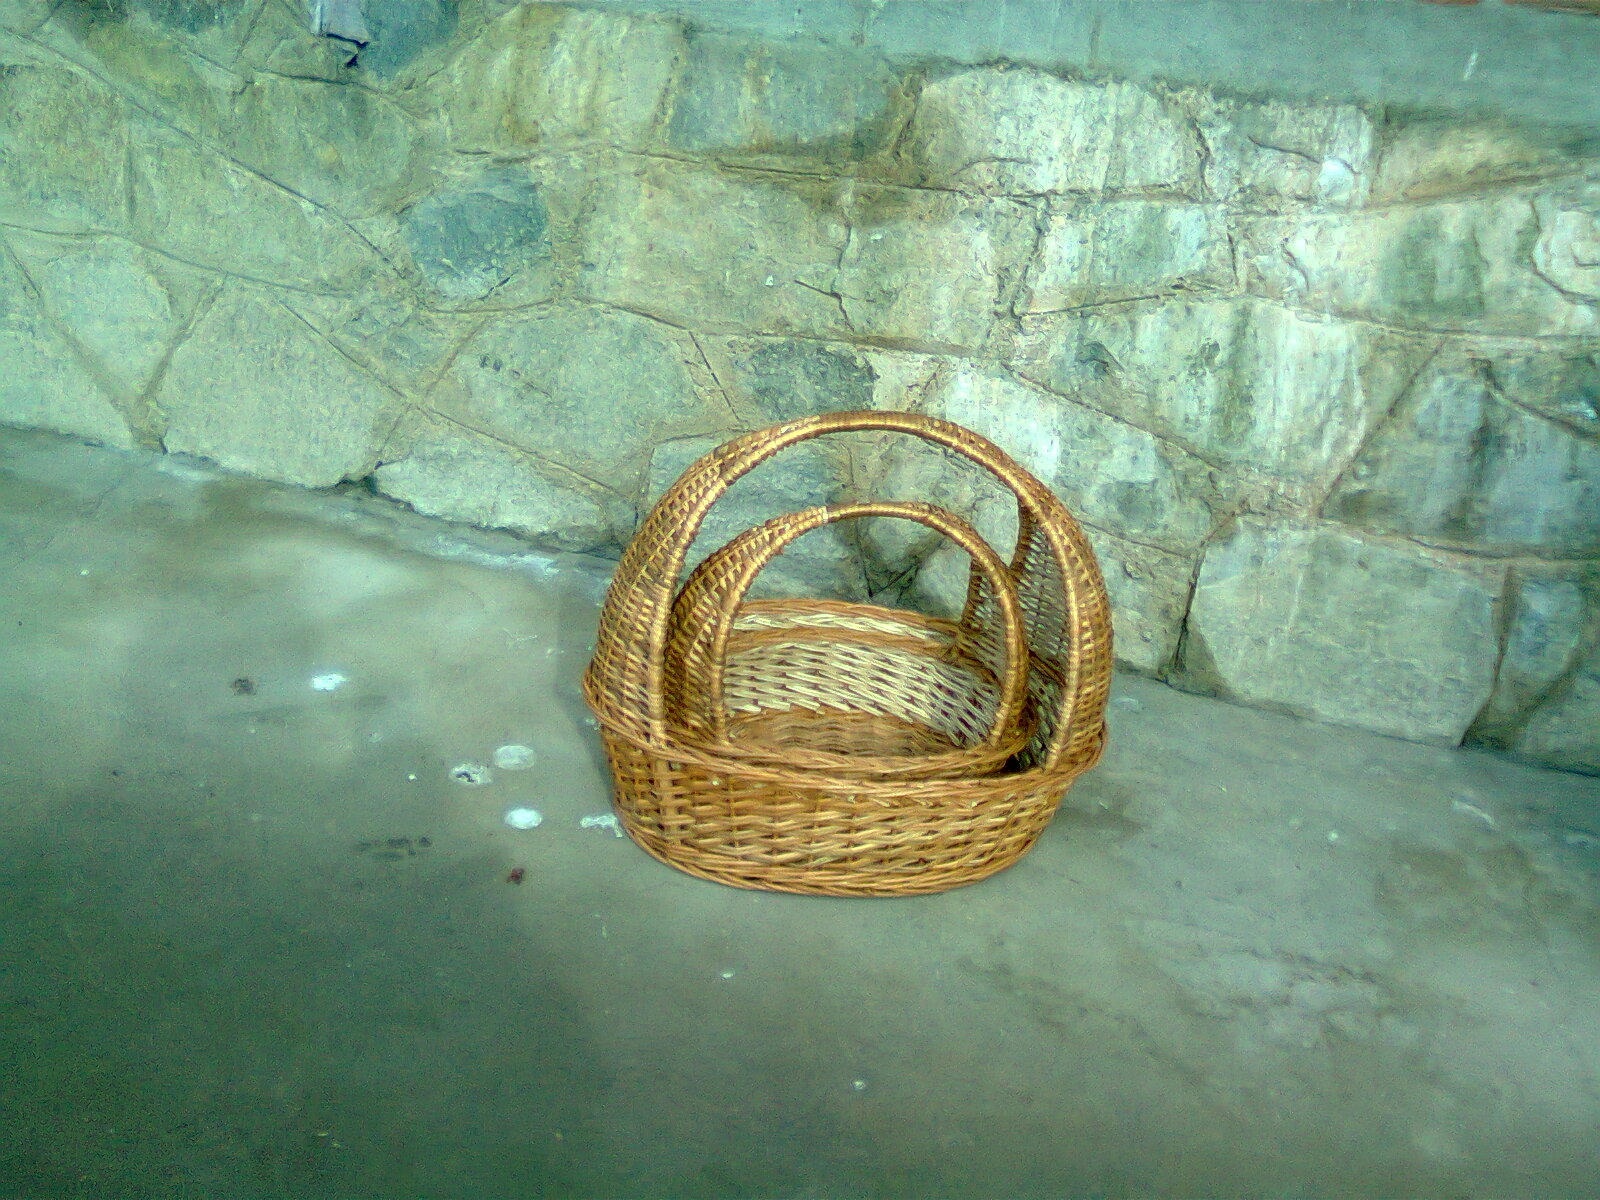 willow wicker dustbin basket